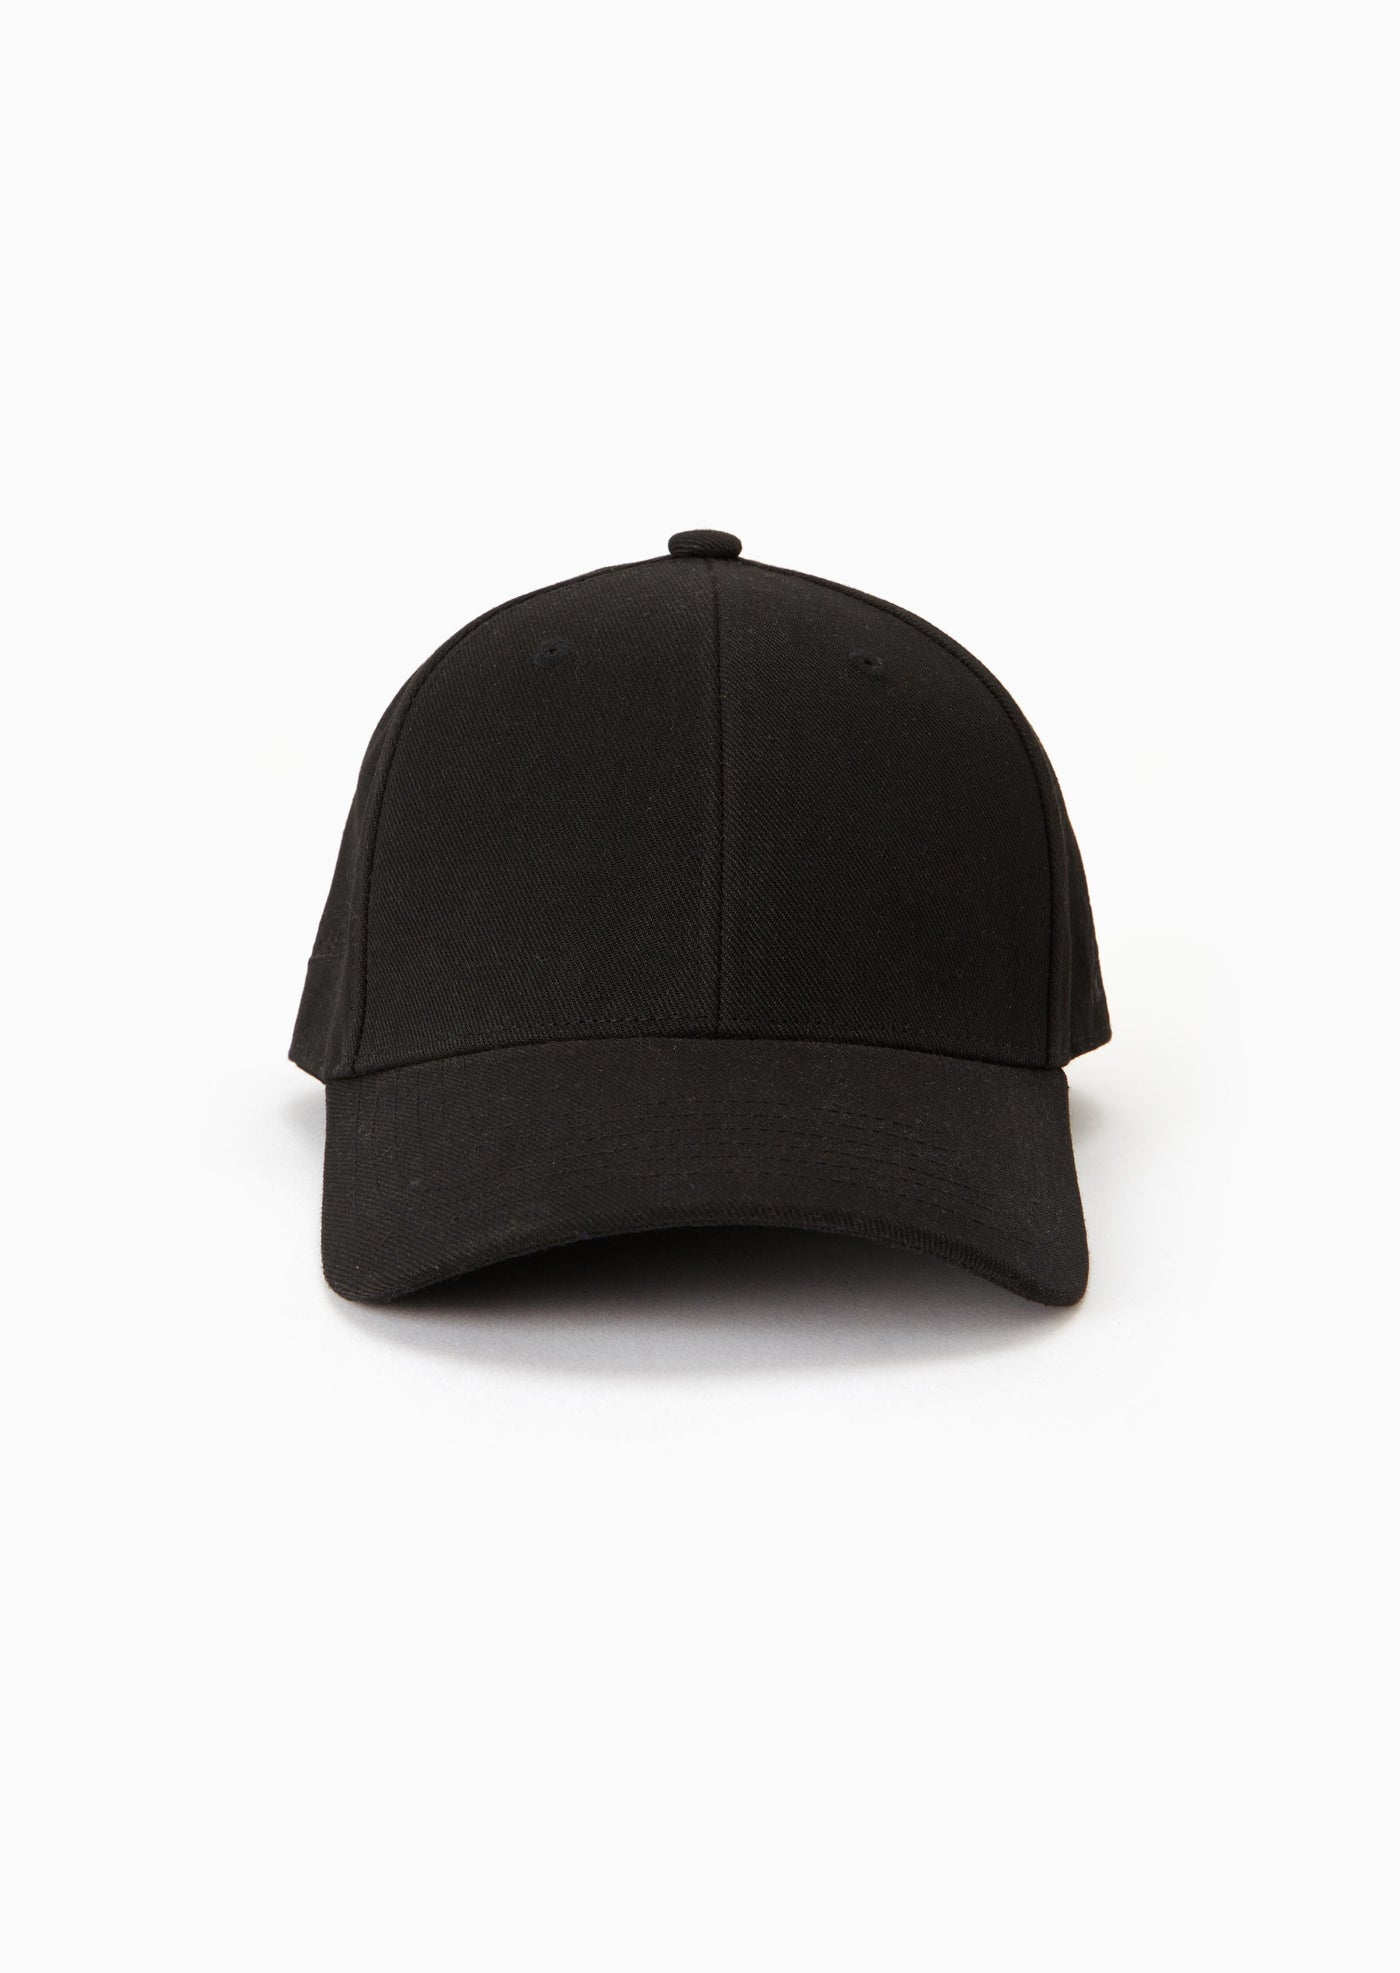 VENTURA CAP IN BLACK